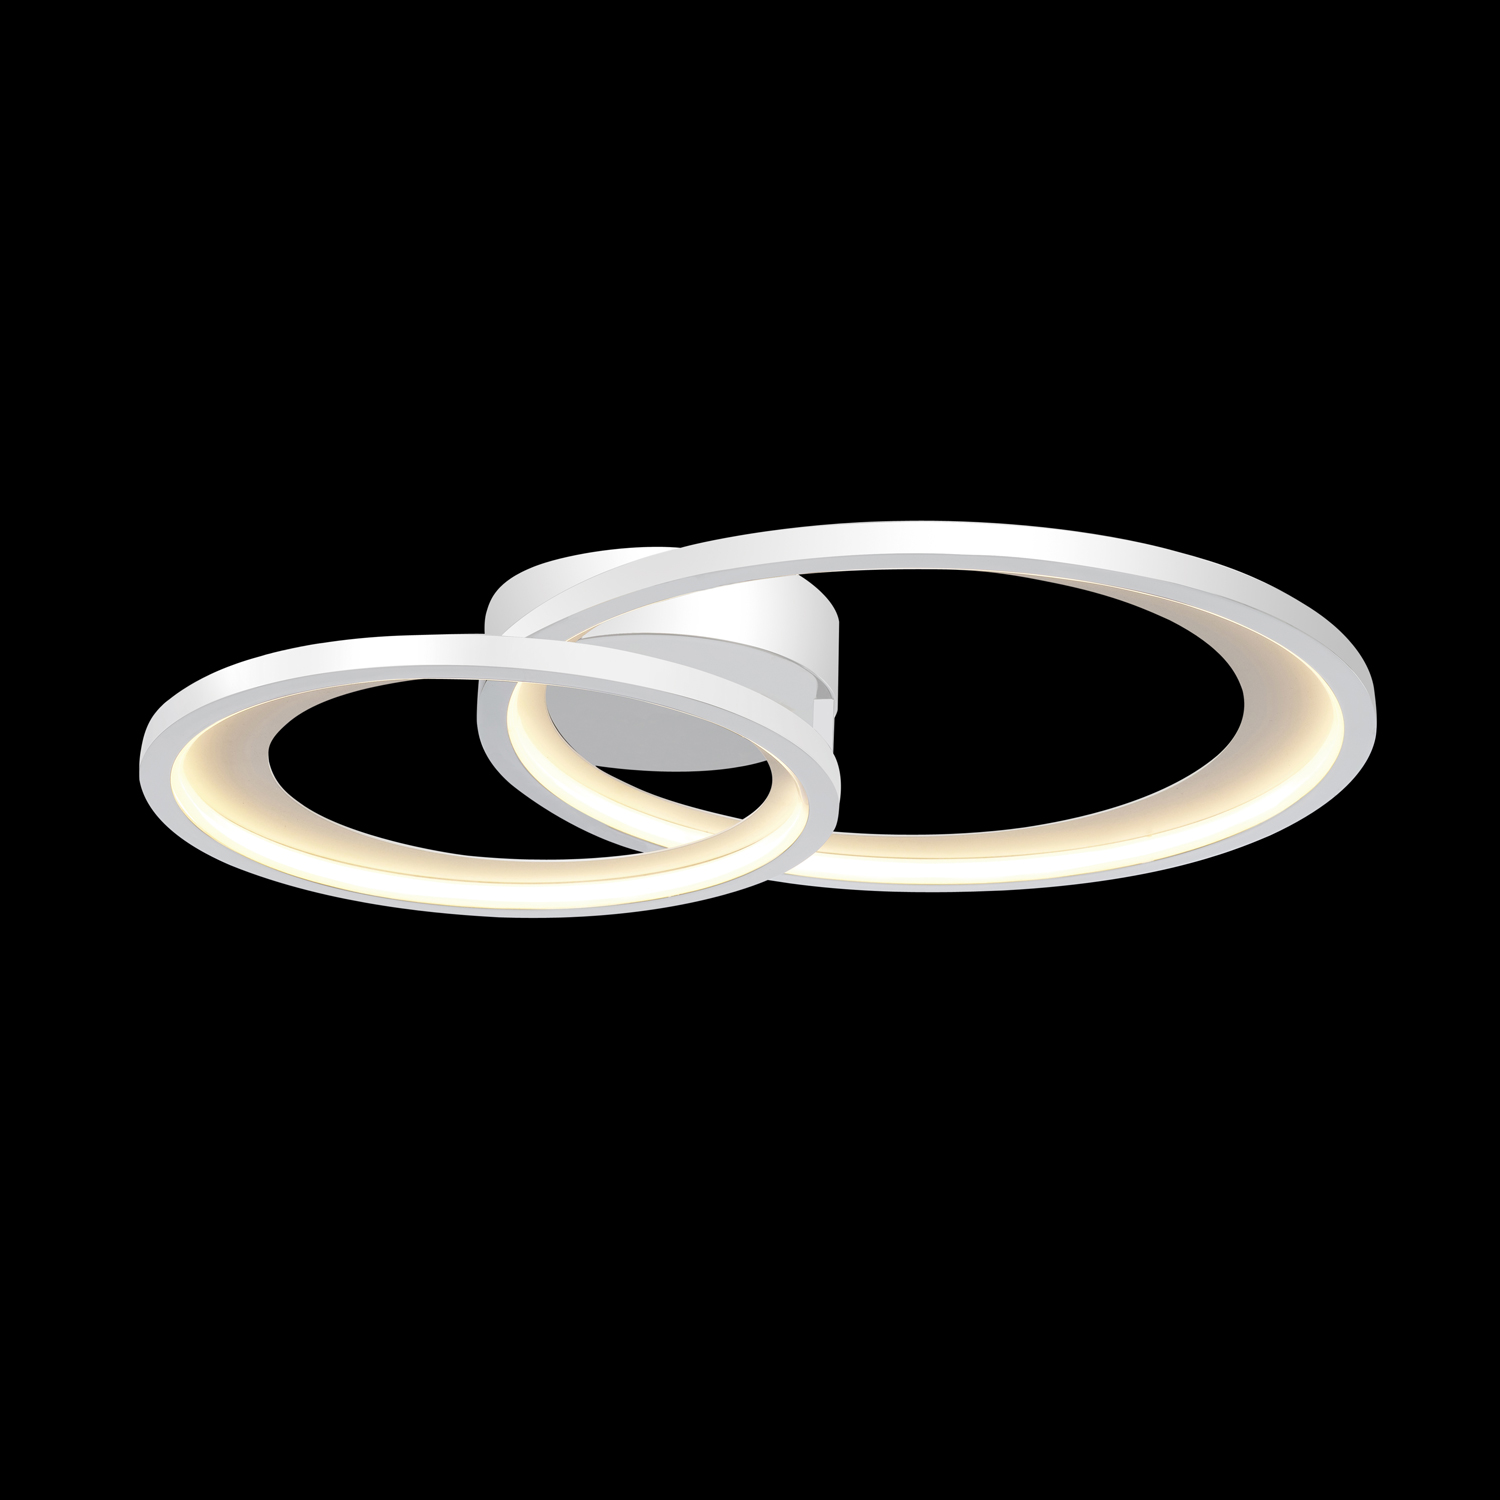 Modern White Double Ring Ceiling Light